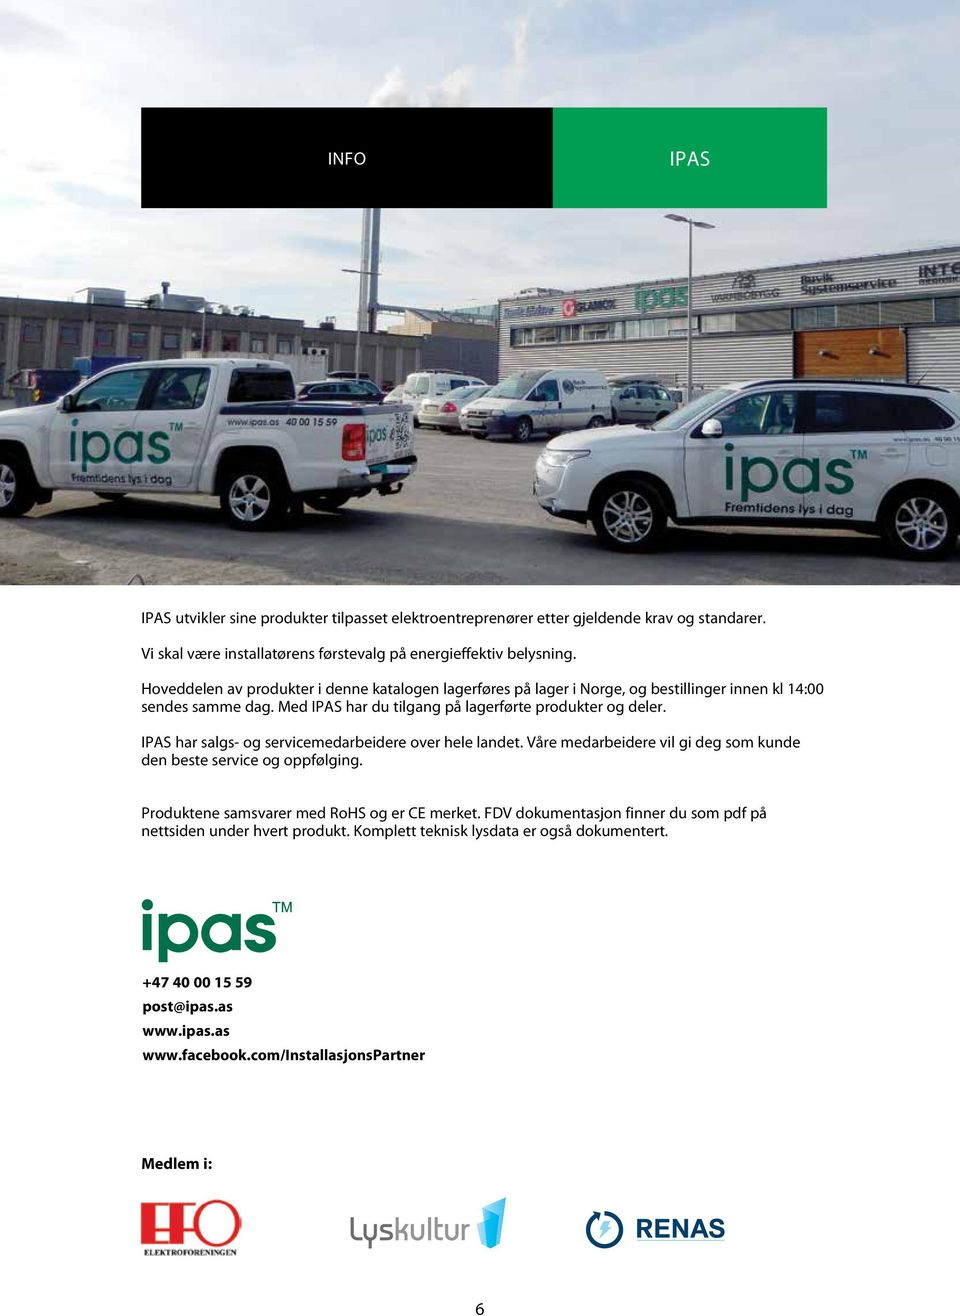 IPAS har salgs- og servicemedarbeidere over hele landet. Våre medarbeidere vil gi deg som kunde den beste service og oppfølging. Produktene samsvarer med RoHS og er CE merket.